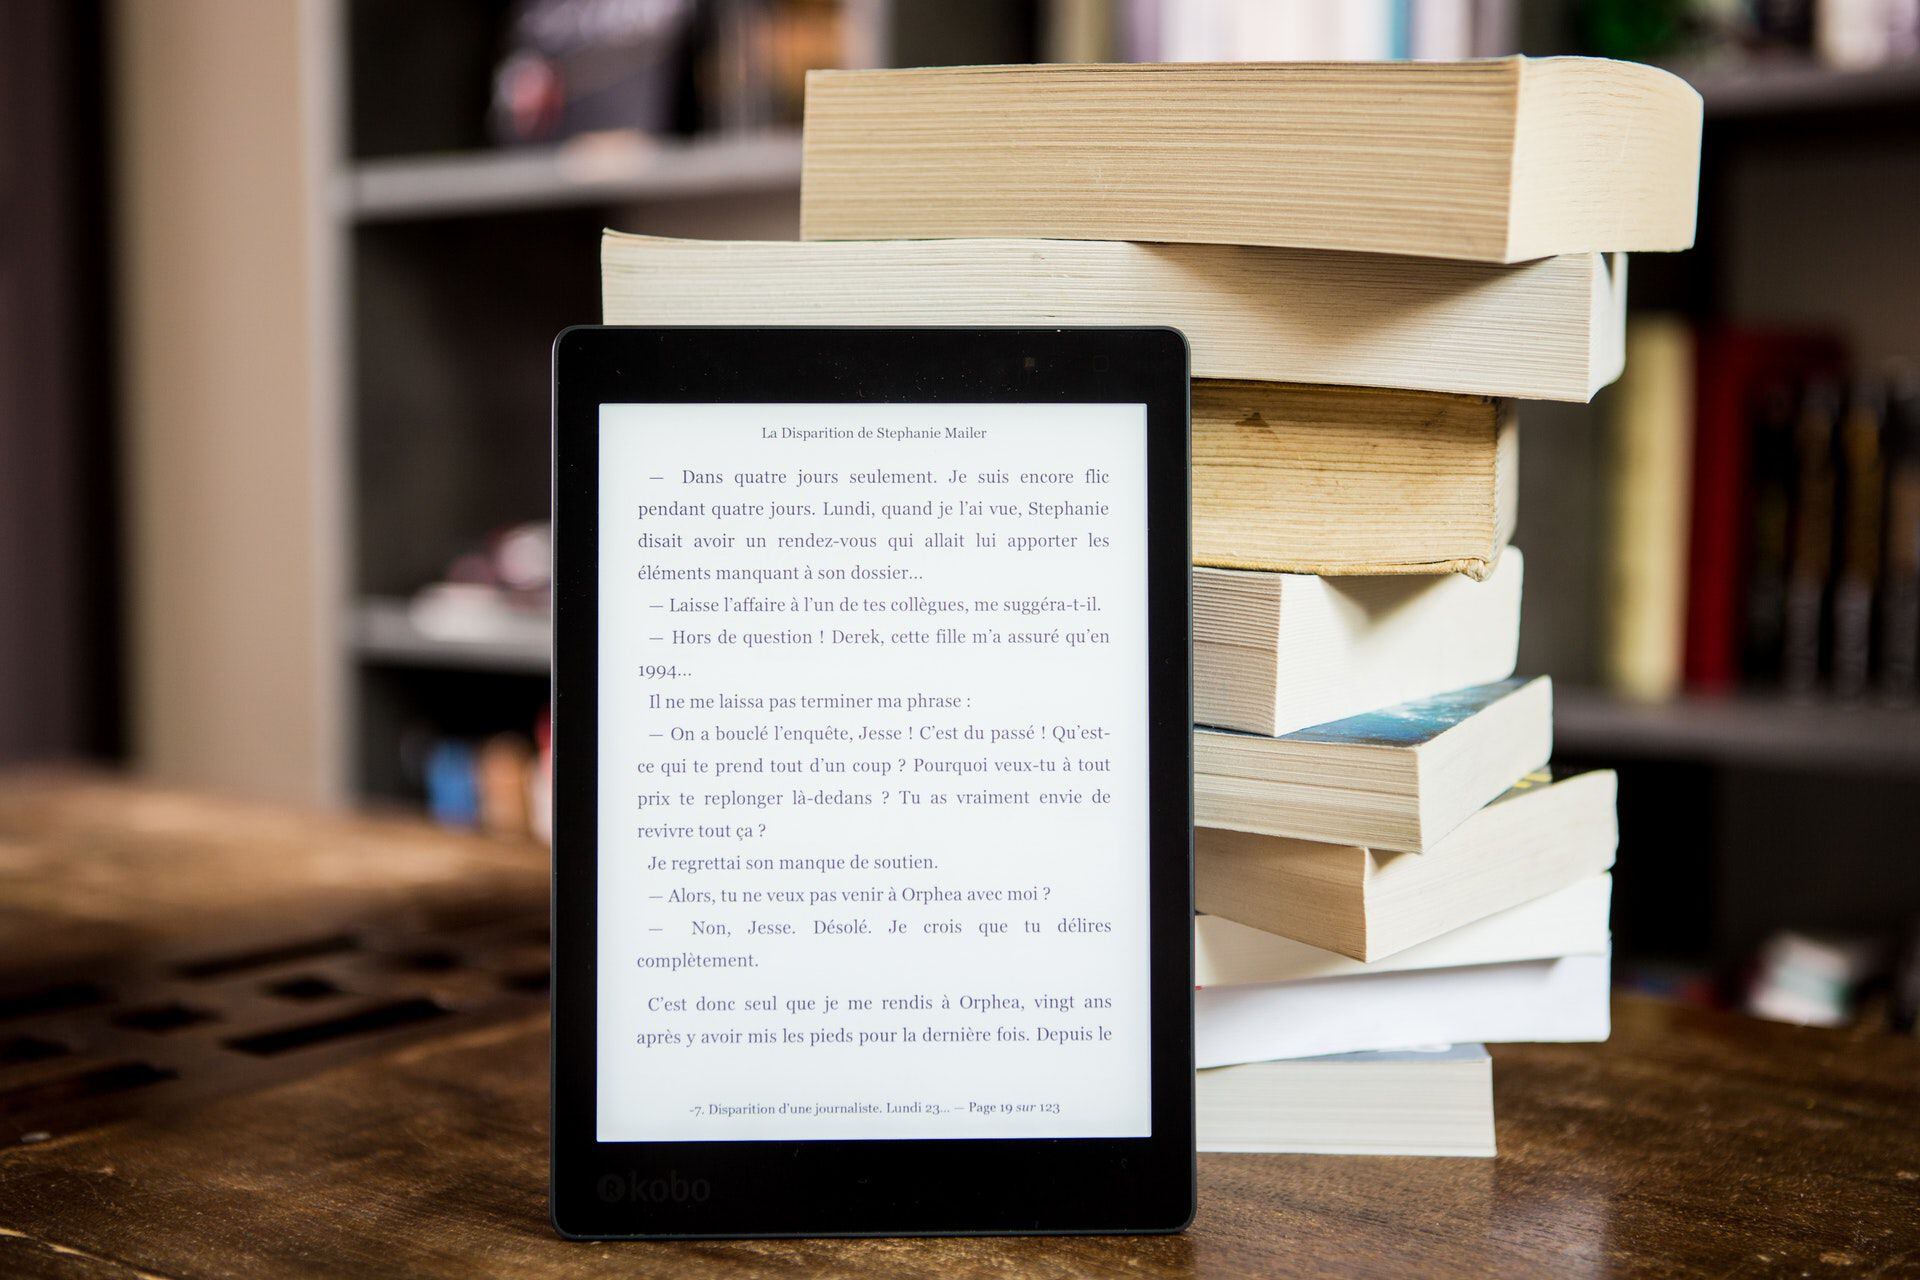 Kindle: ¿Mejor que un libro físico?